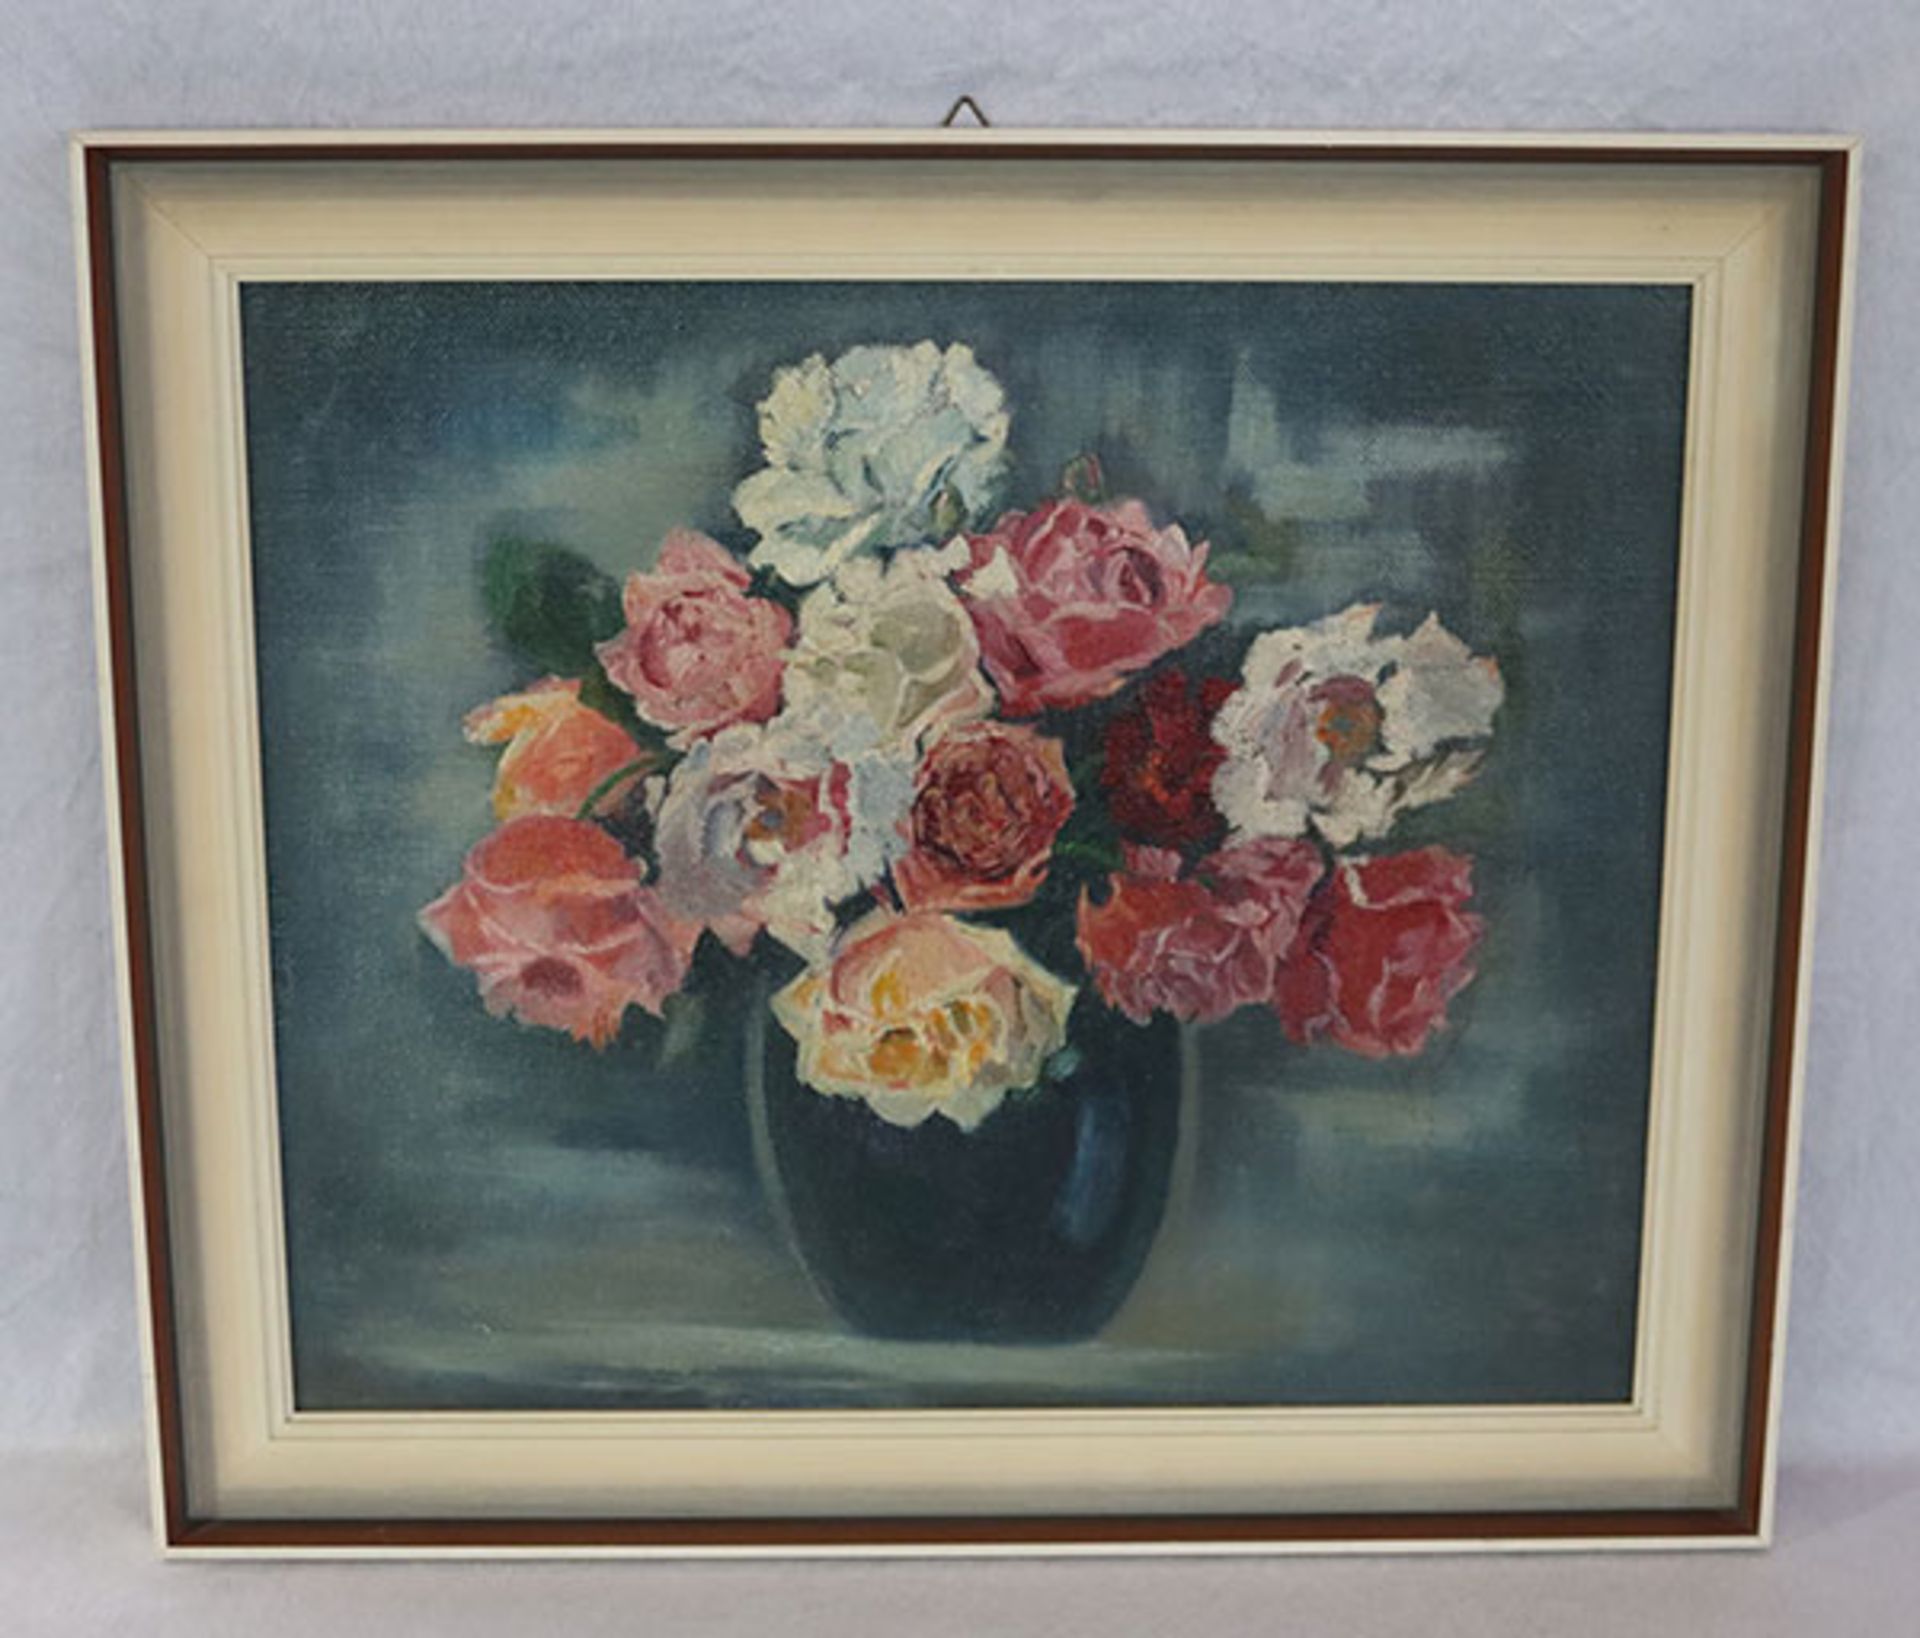 Gemälde ÖL/LW aufgeklebt 'Rosen in Vase', gerahmt, incl. Rahmen 53 cm x 61 cm